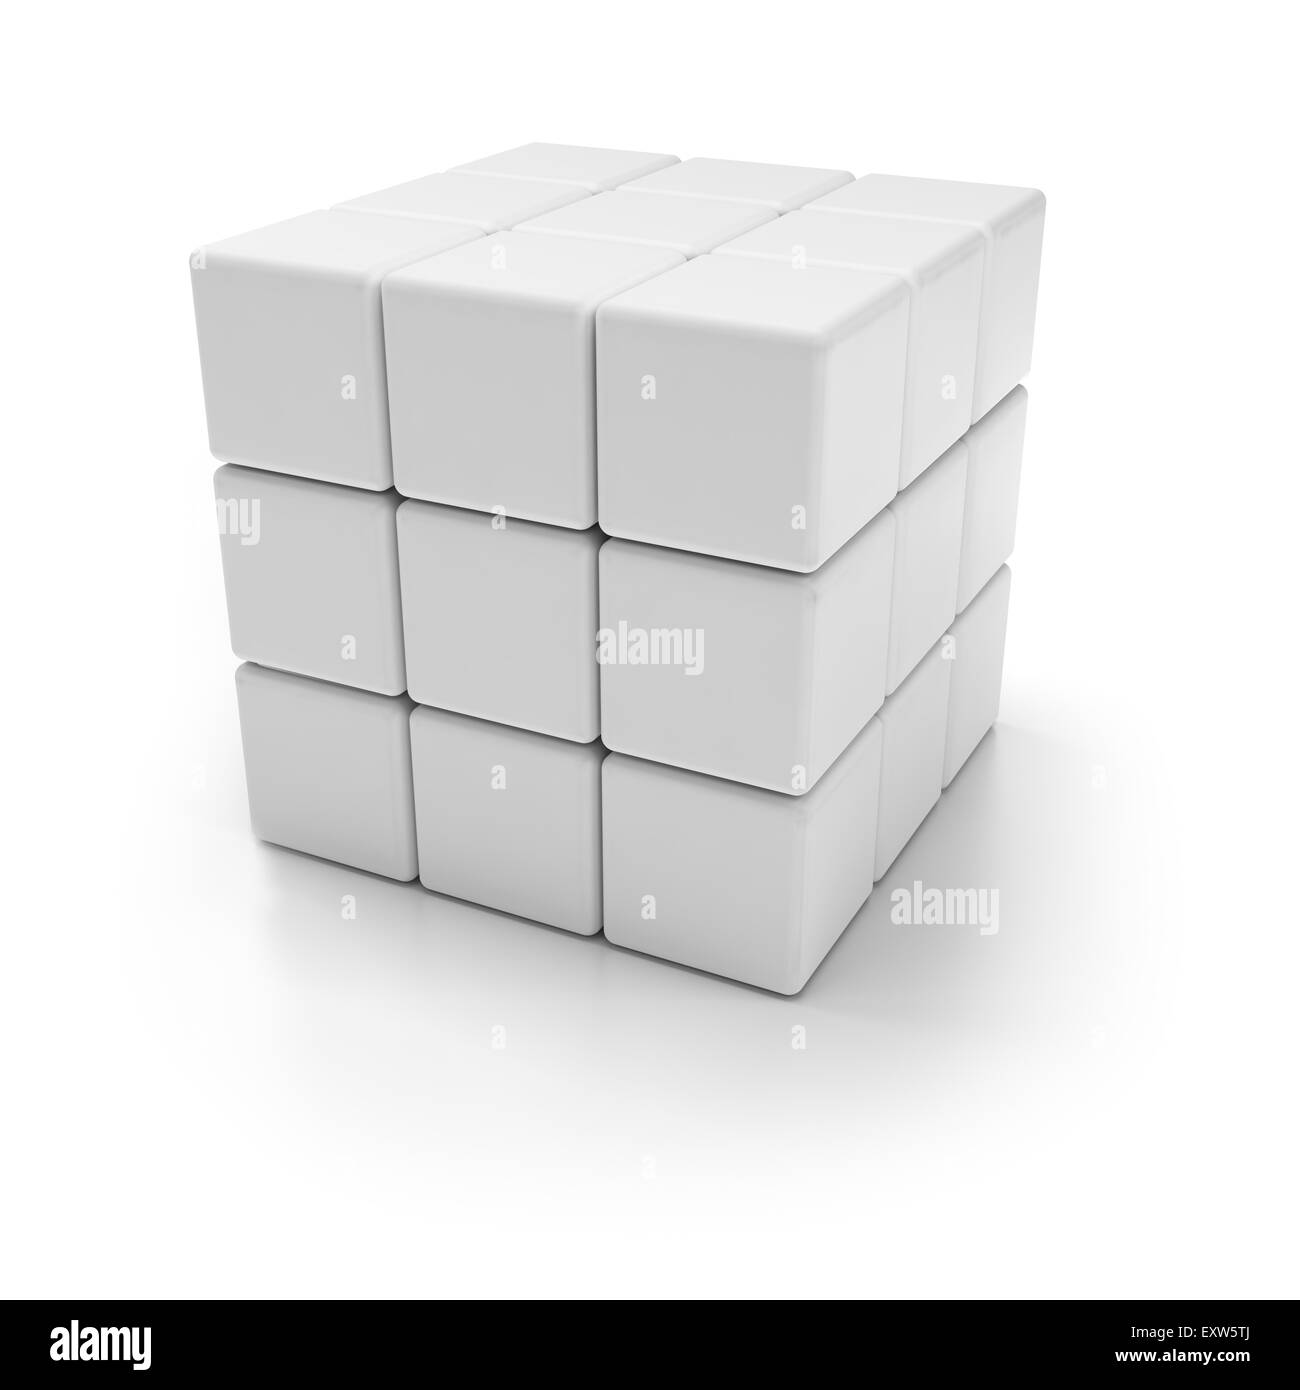 Cube blanc : 1 497 711 images, photos de stock, objets 3D et